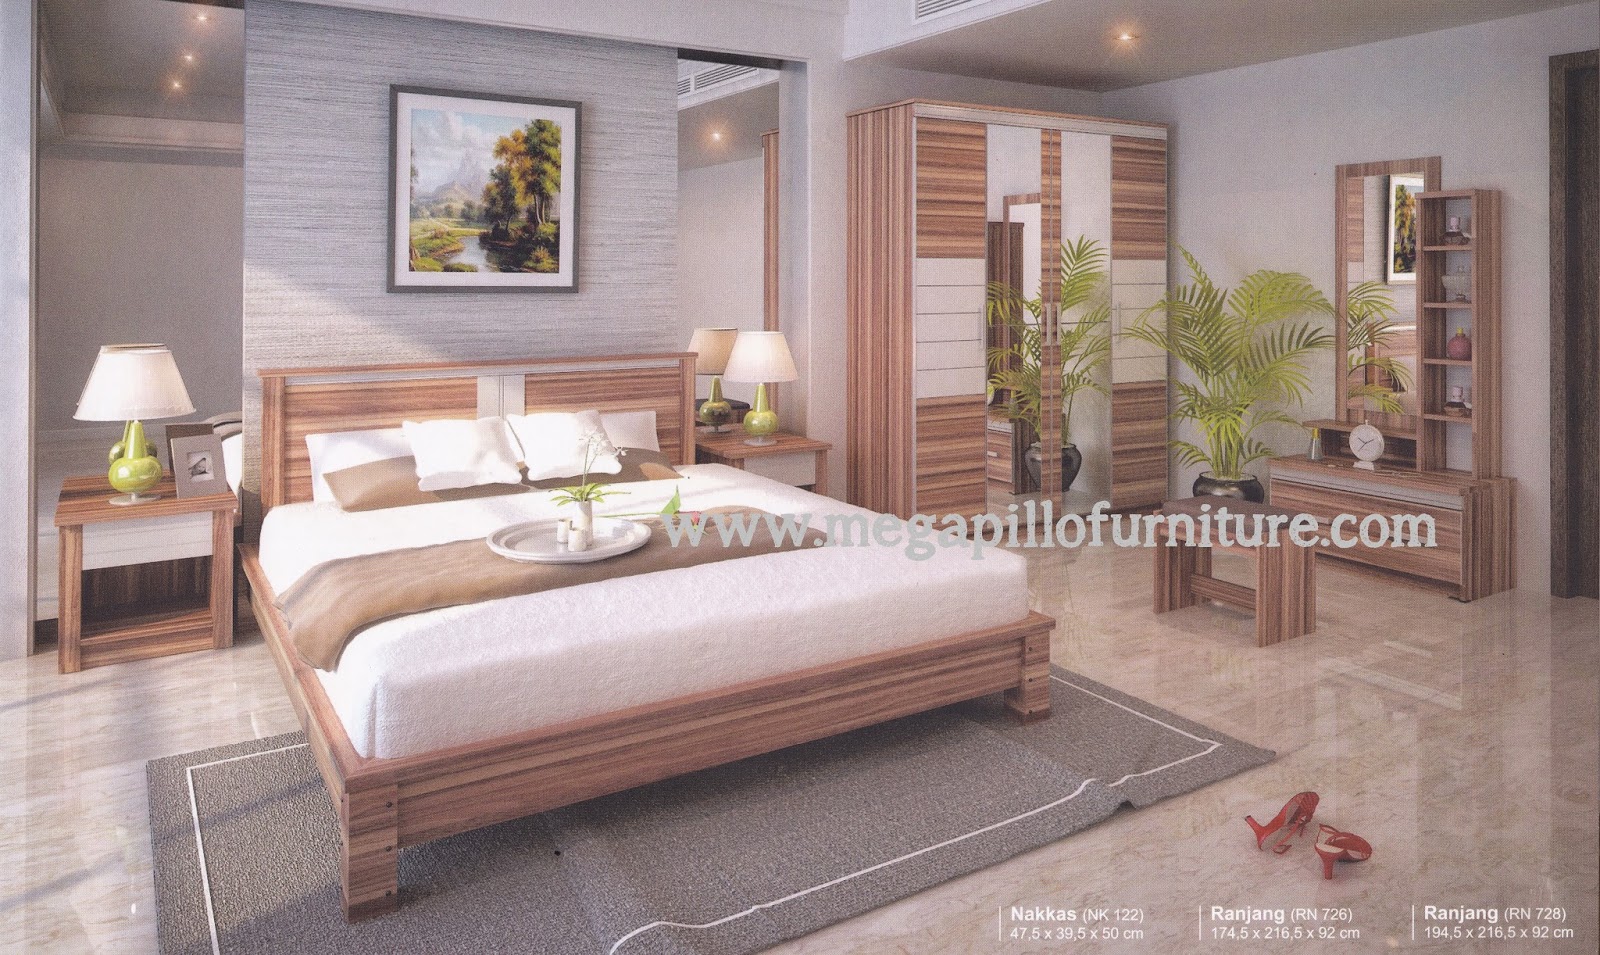 Megapillo Furniture & Spring Bed Online Shop: Ranjang Besi 